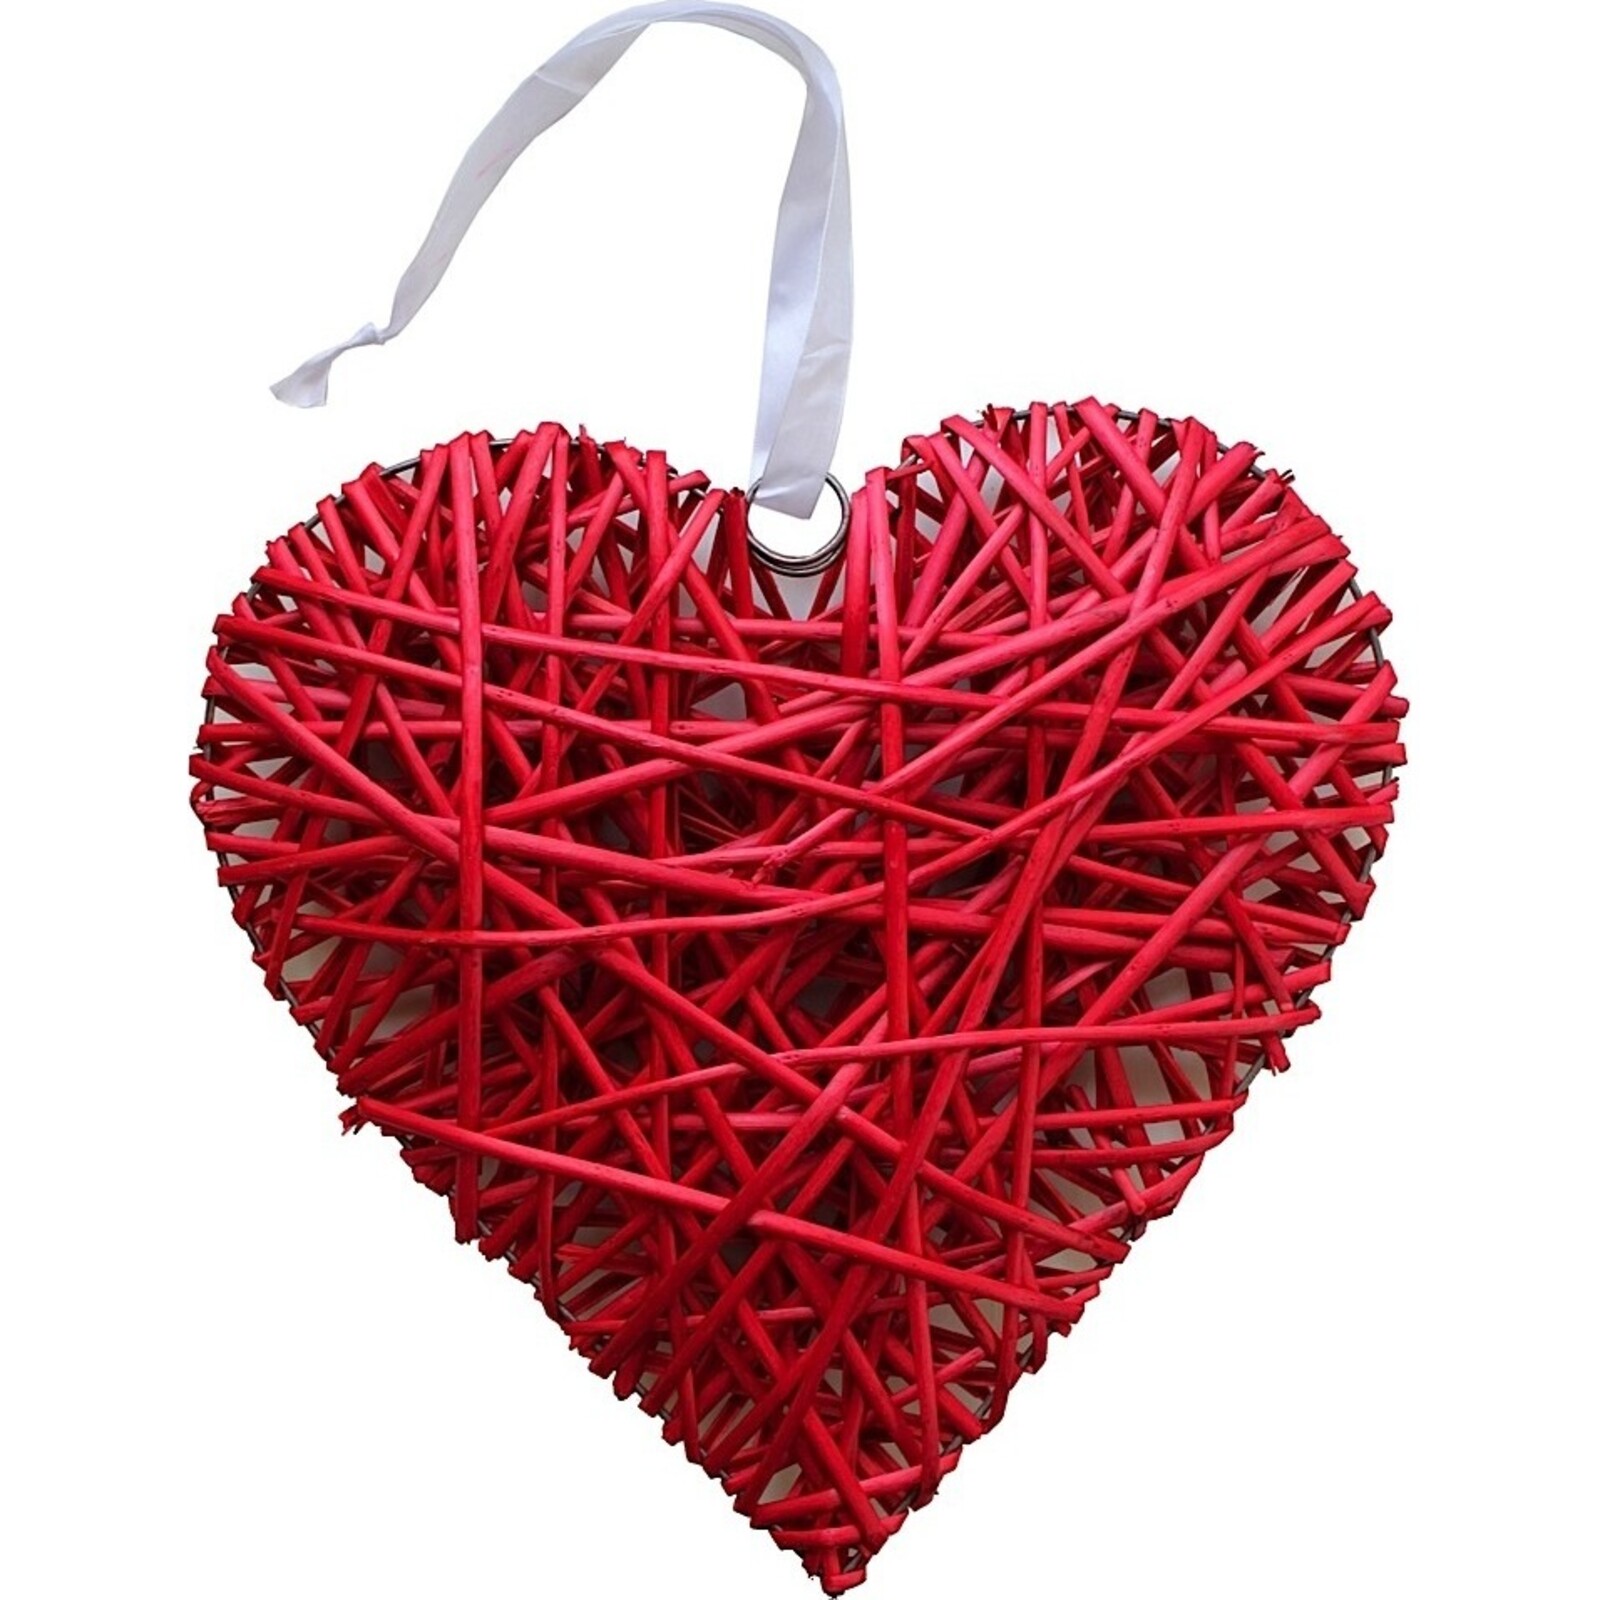 Tessuti Puff Heart - Large - Red